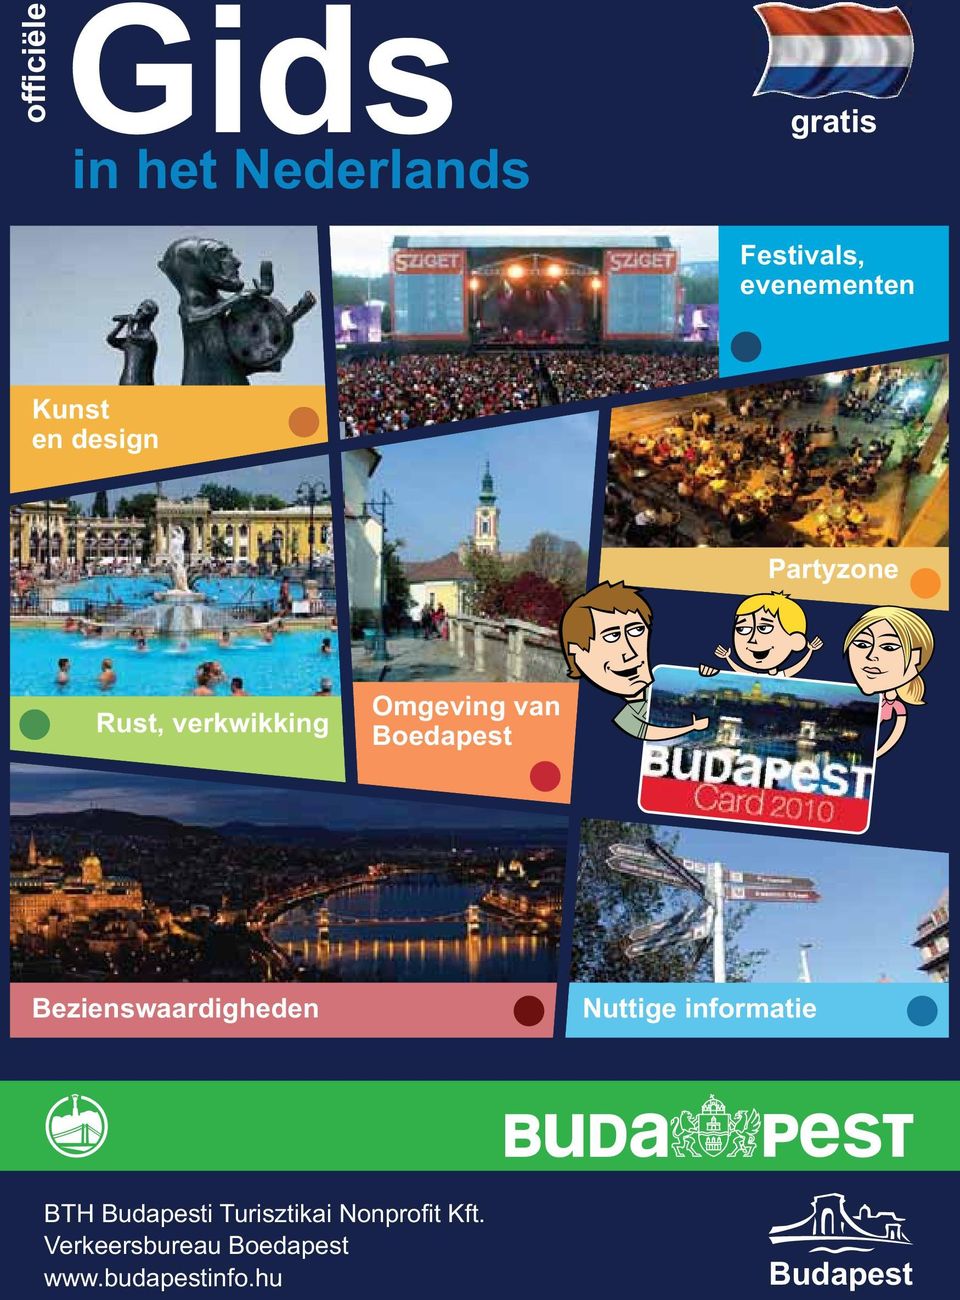 Boedapest Bezienswaardigheden Nuttige informatie BTH Budapesti